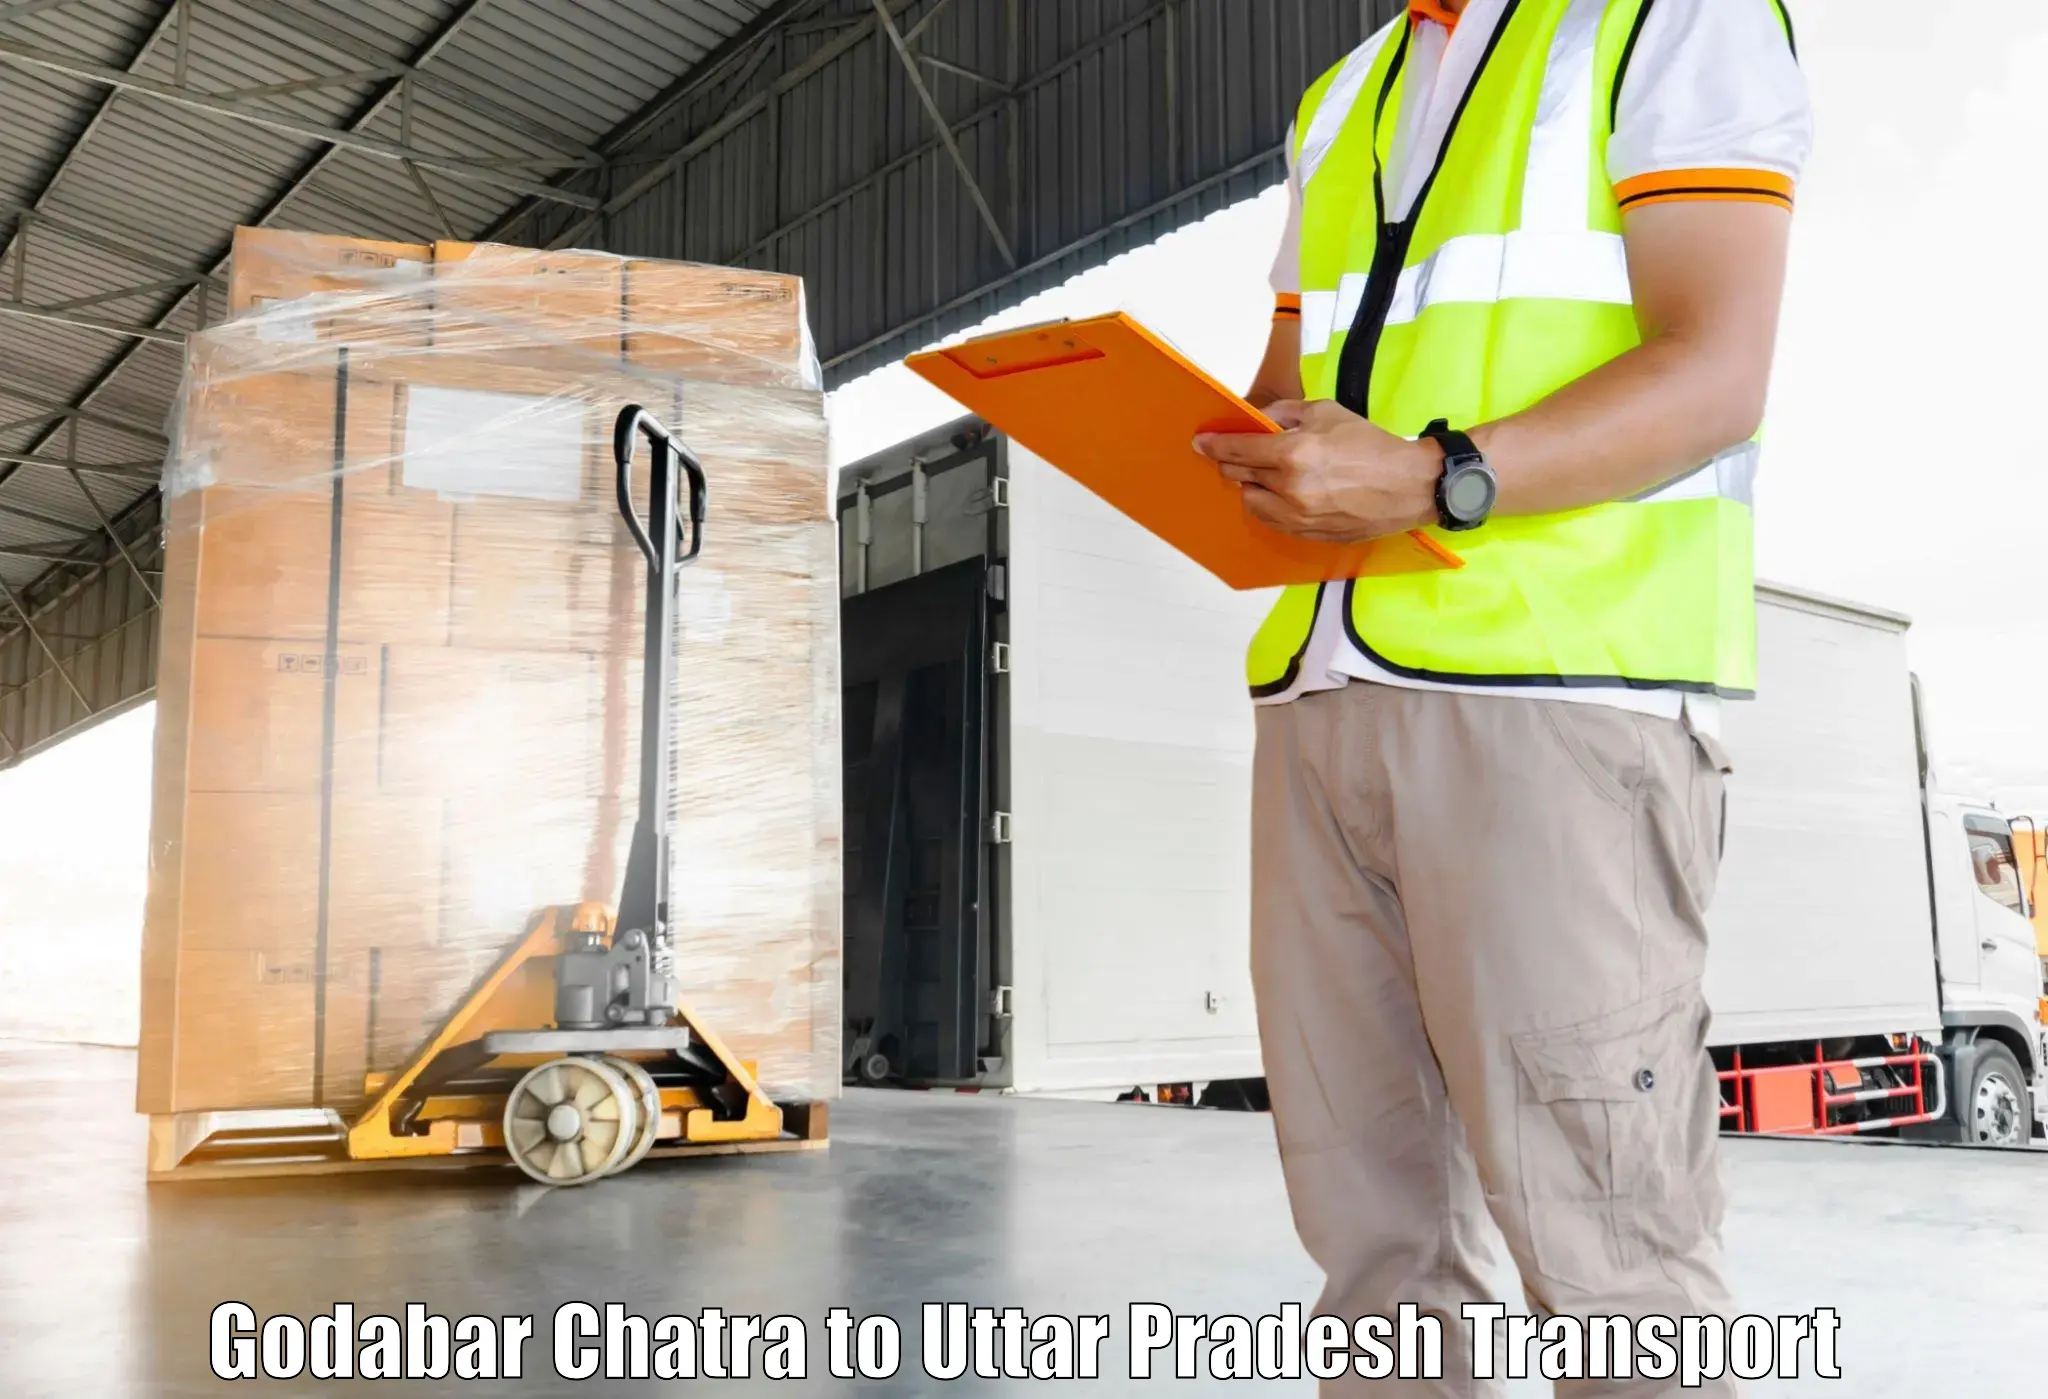 Transportation solution services Godabar Chatra to Uttar Pradesh